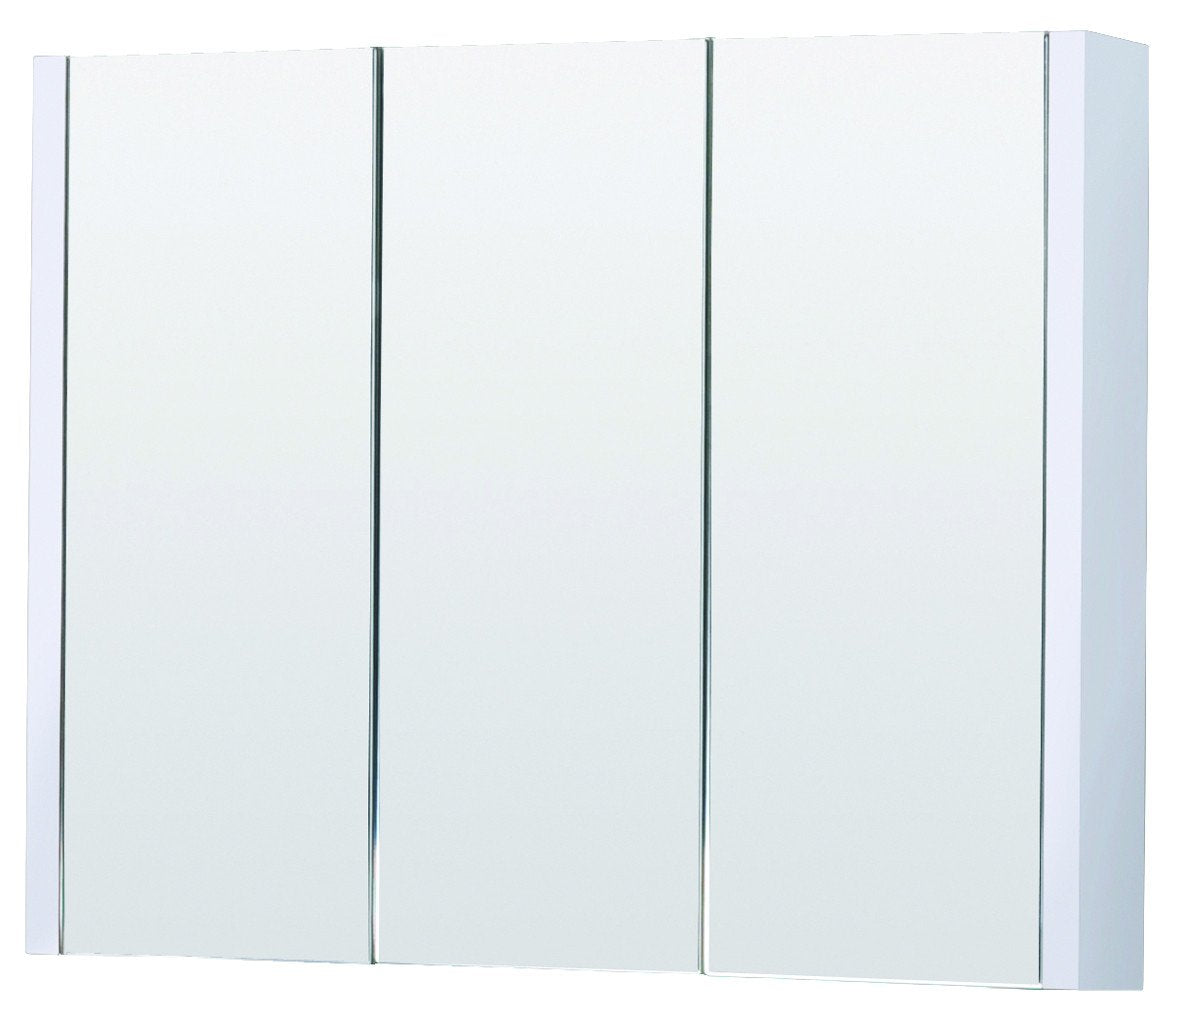 Minimalist 1500 Mirror Wall Cabinet